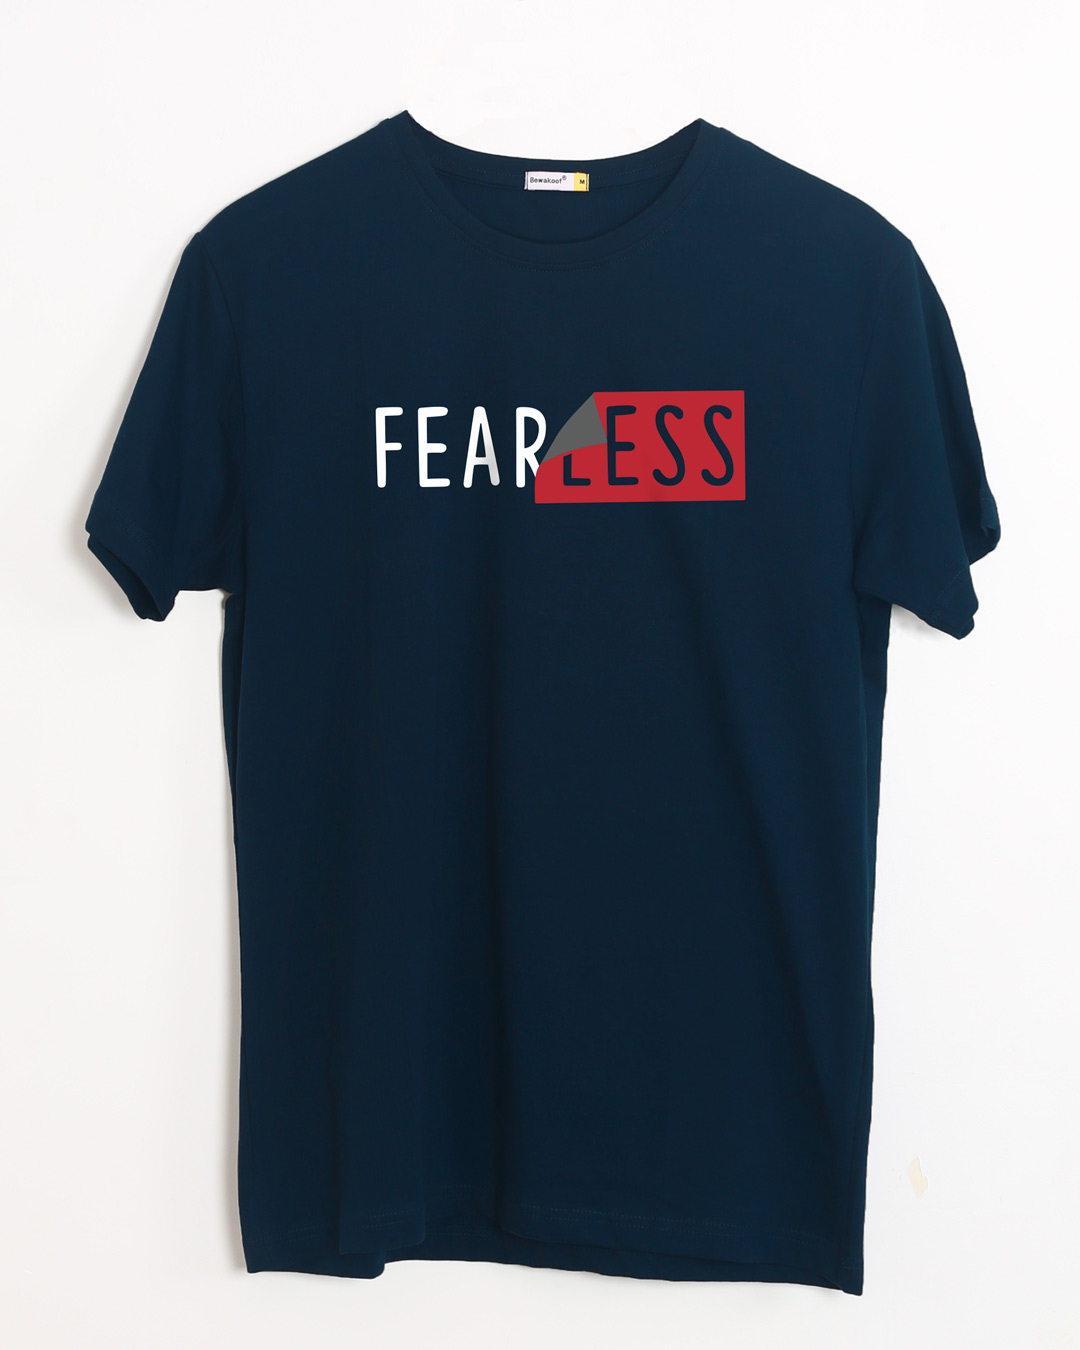 Buy Peel Off Fearless Half Sleeve T-Shirt Online at Bewakoof